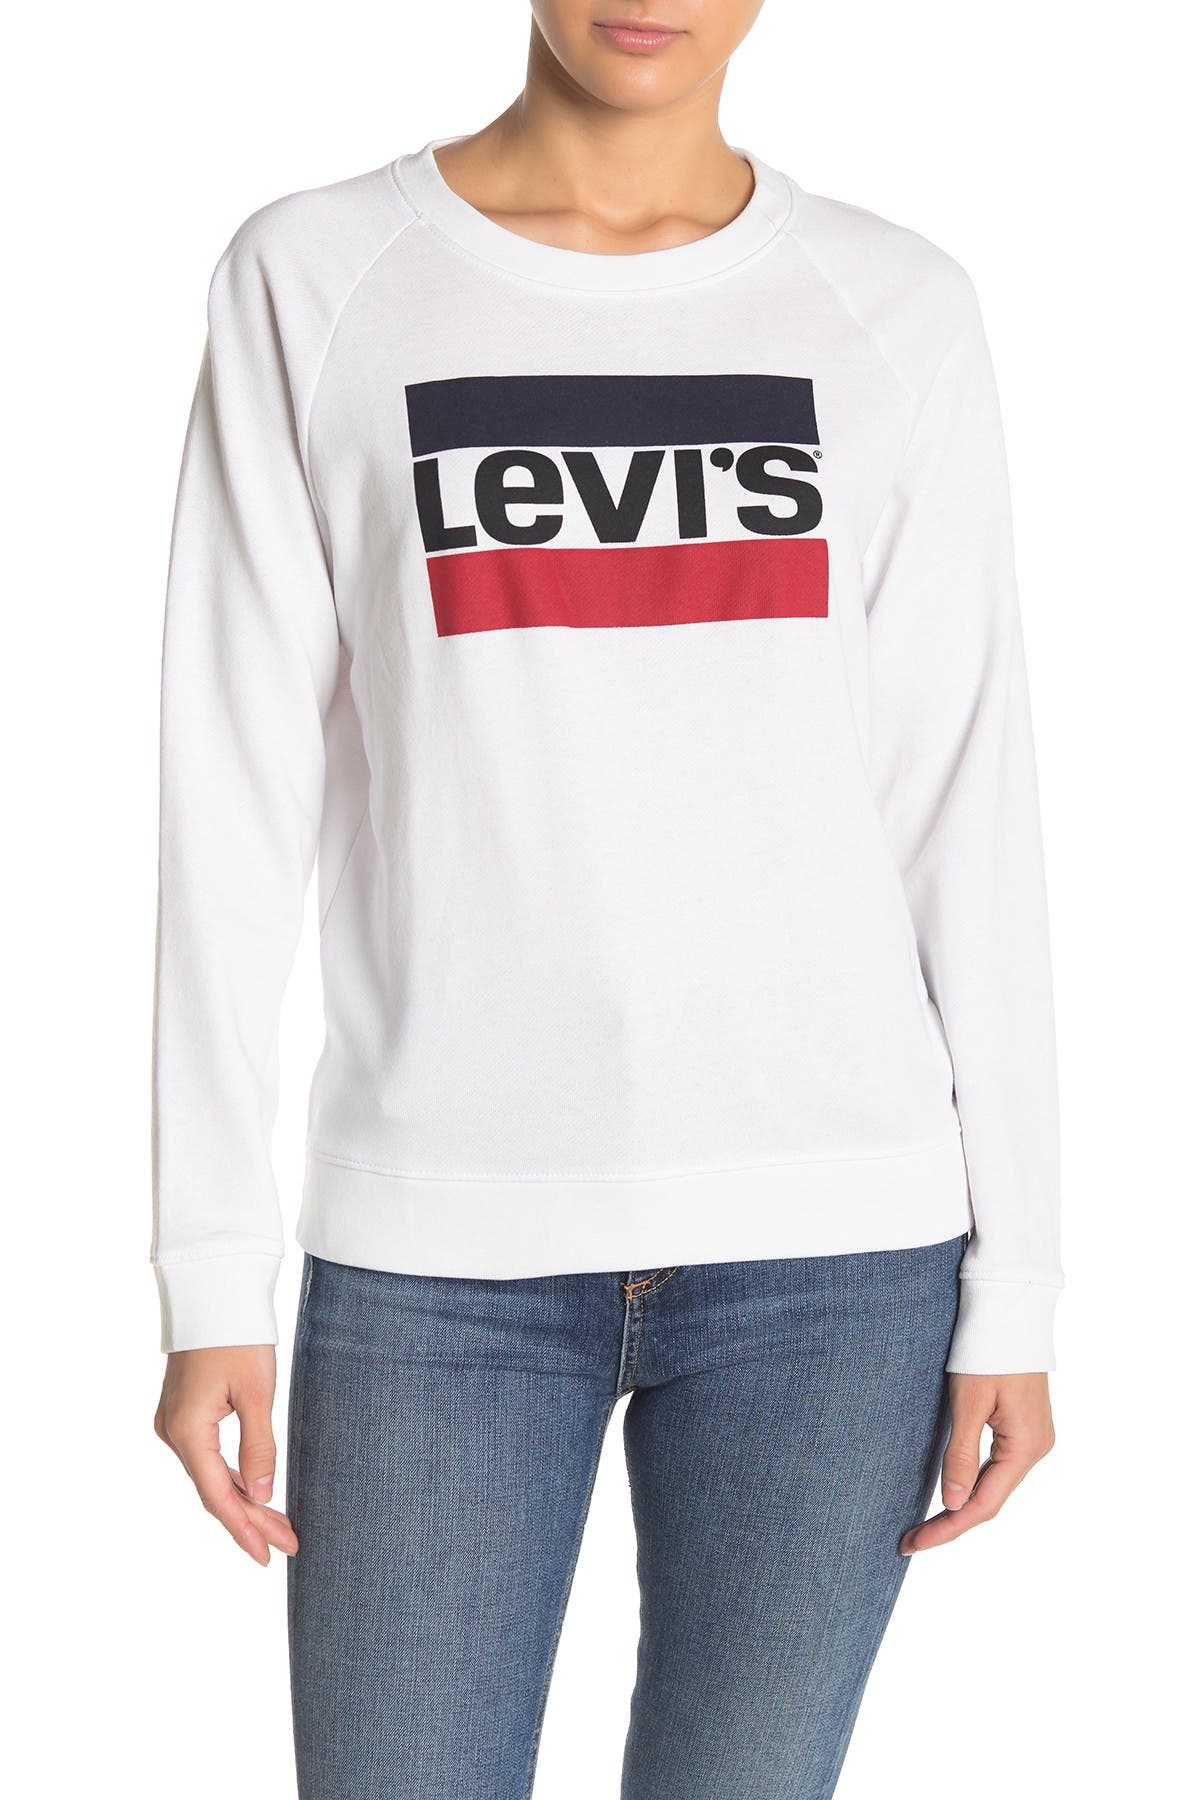 Levi's | Graphic Crew Neck Sweatshirt 